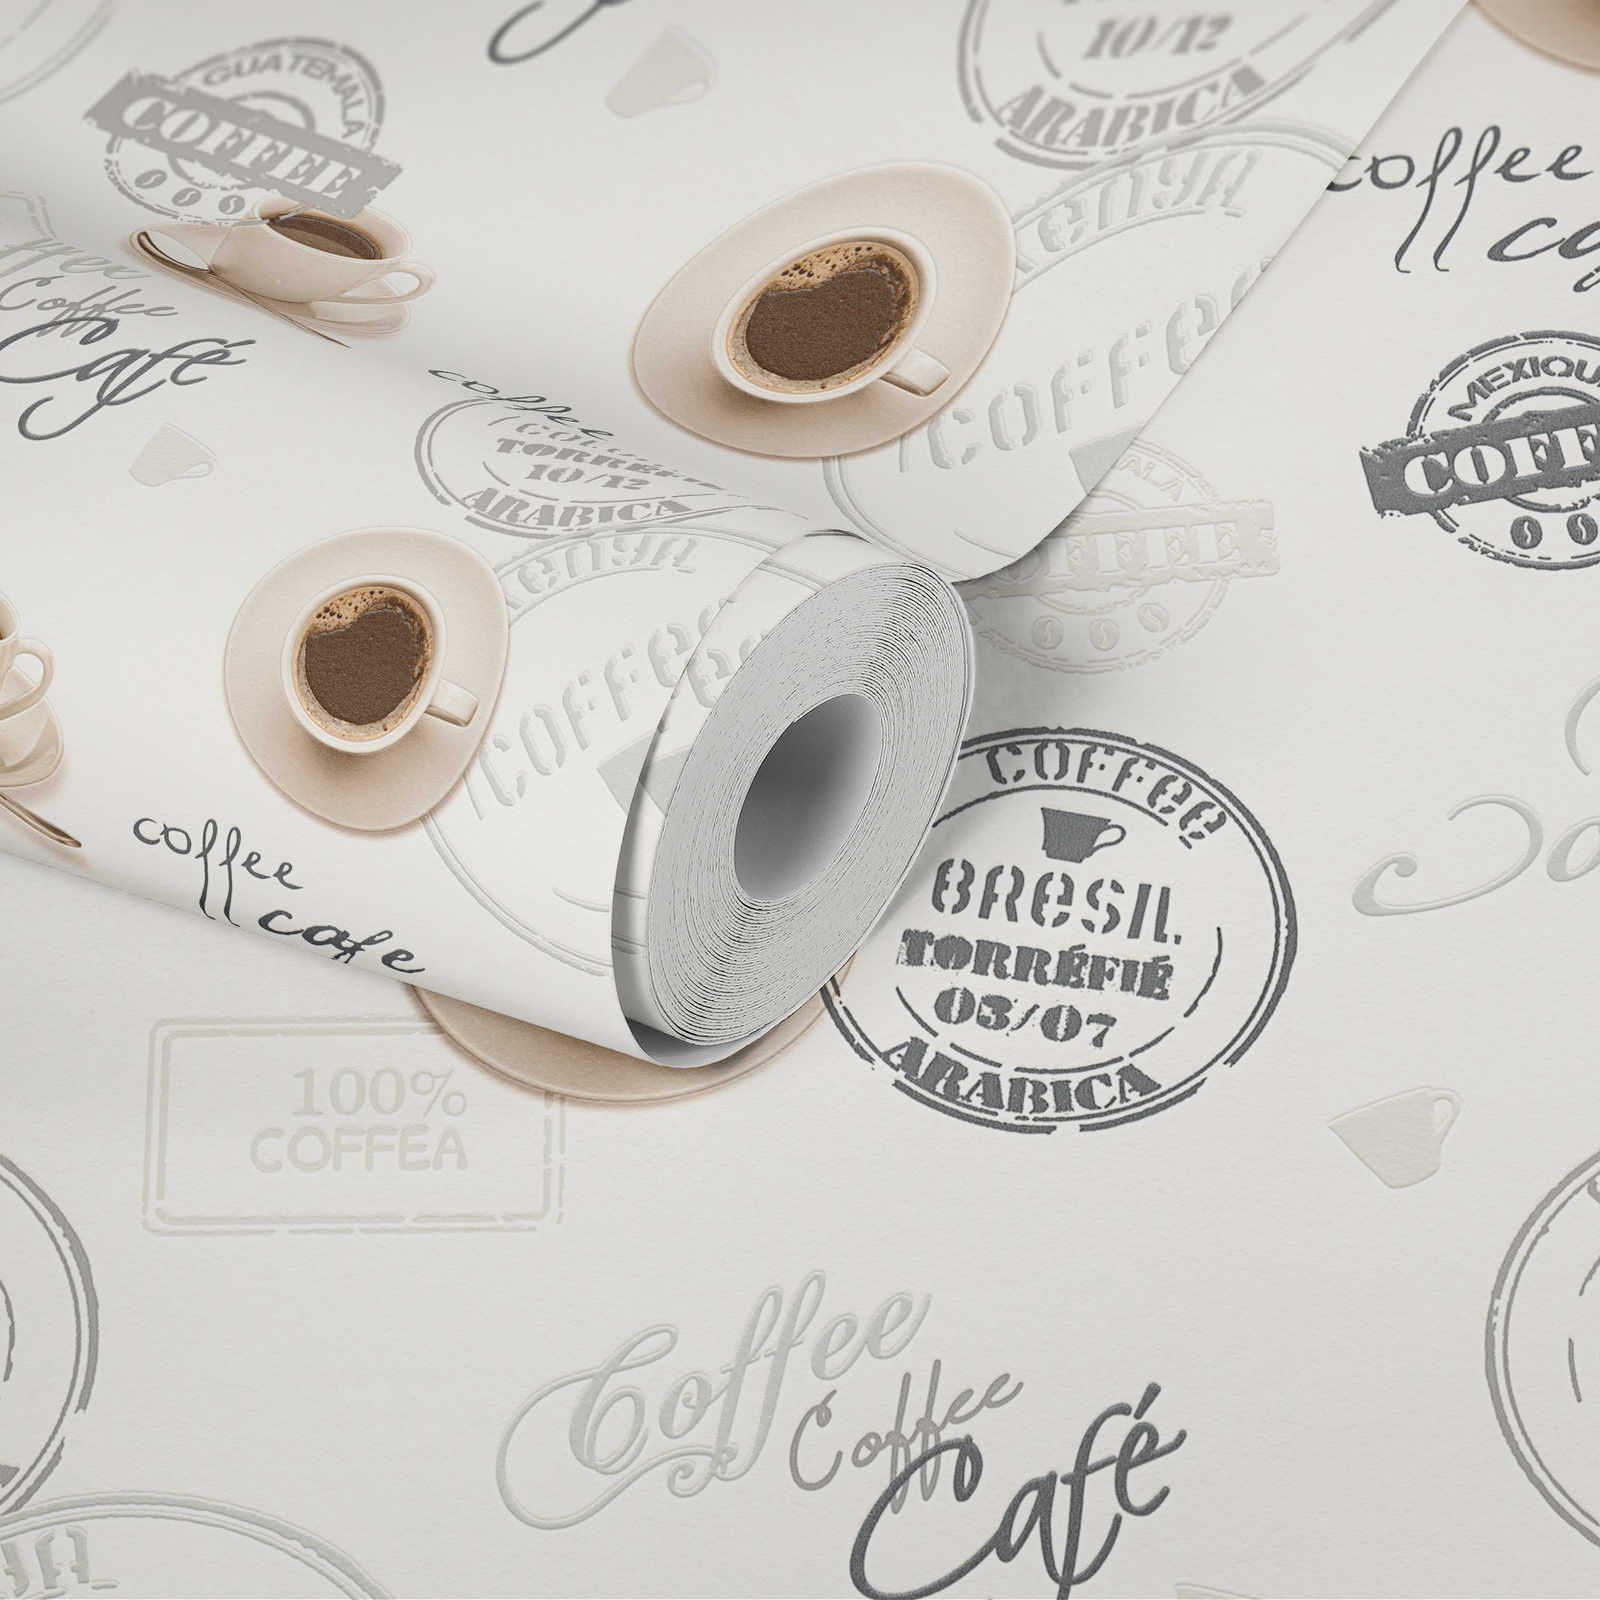             Papier peint café pour la cuisine, design rétro - crème, beige
        